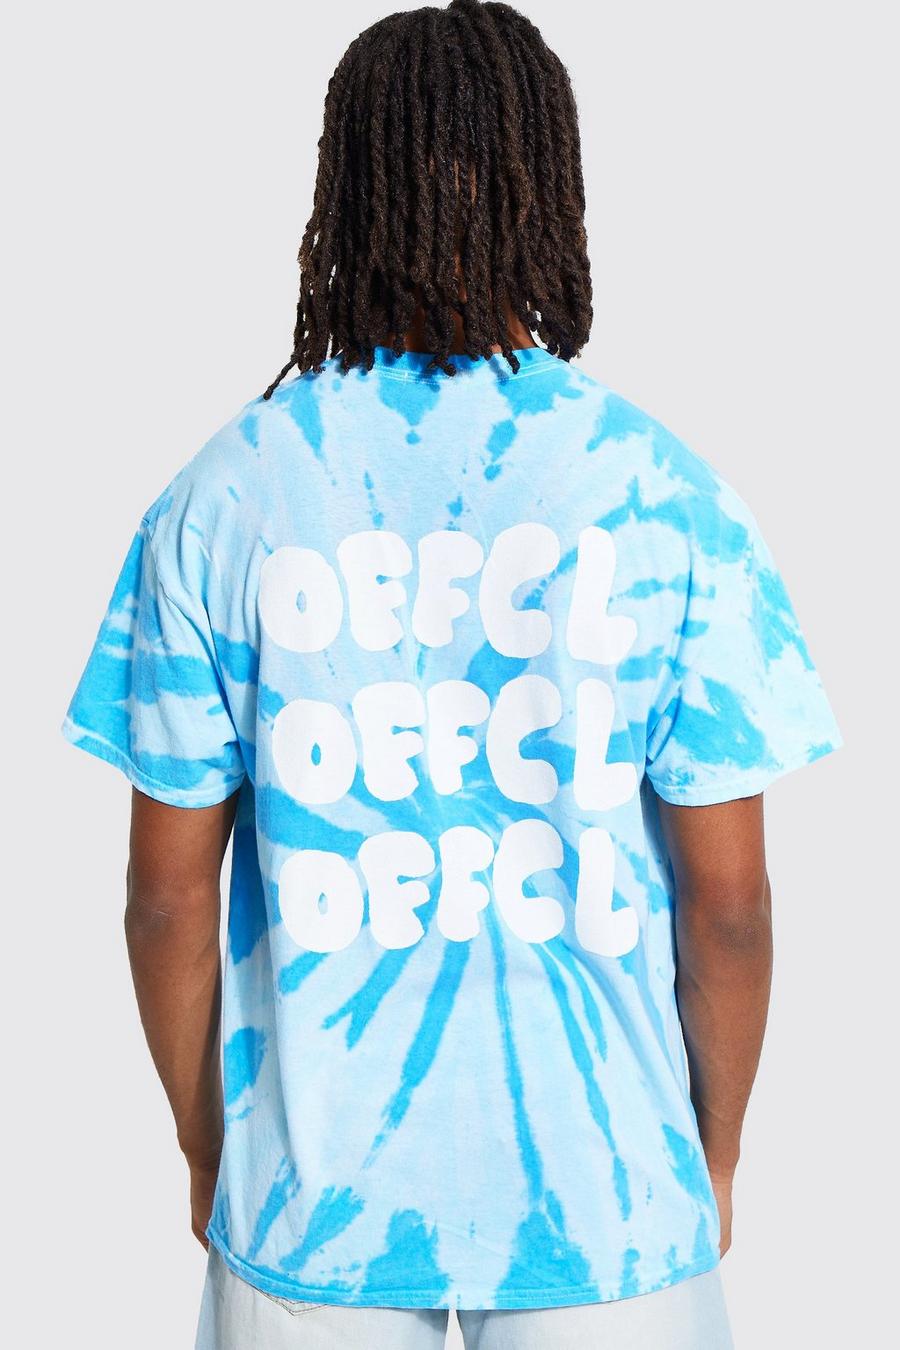 T-shirt oversize in fantasia tie dye con stampa Offcl sul retro, Blue azzurro